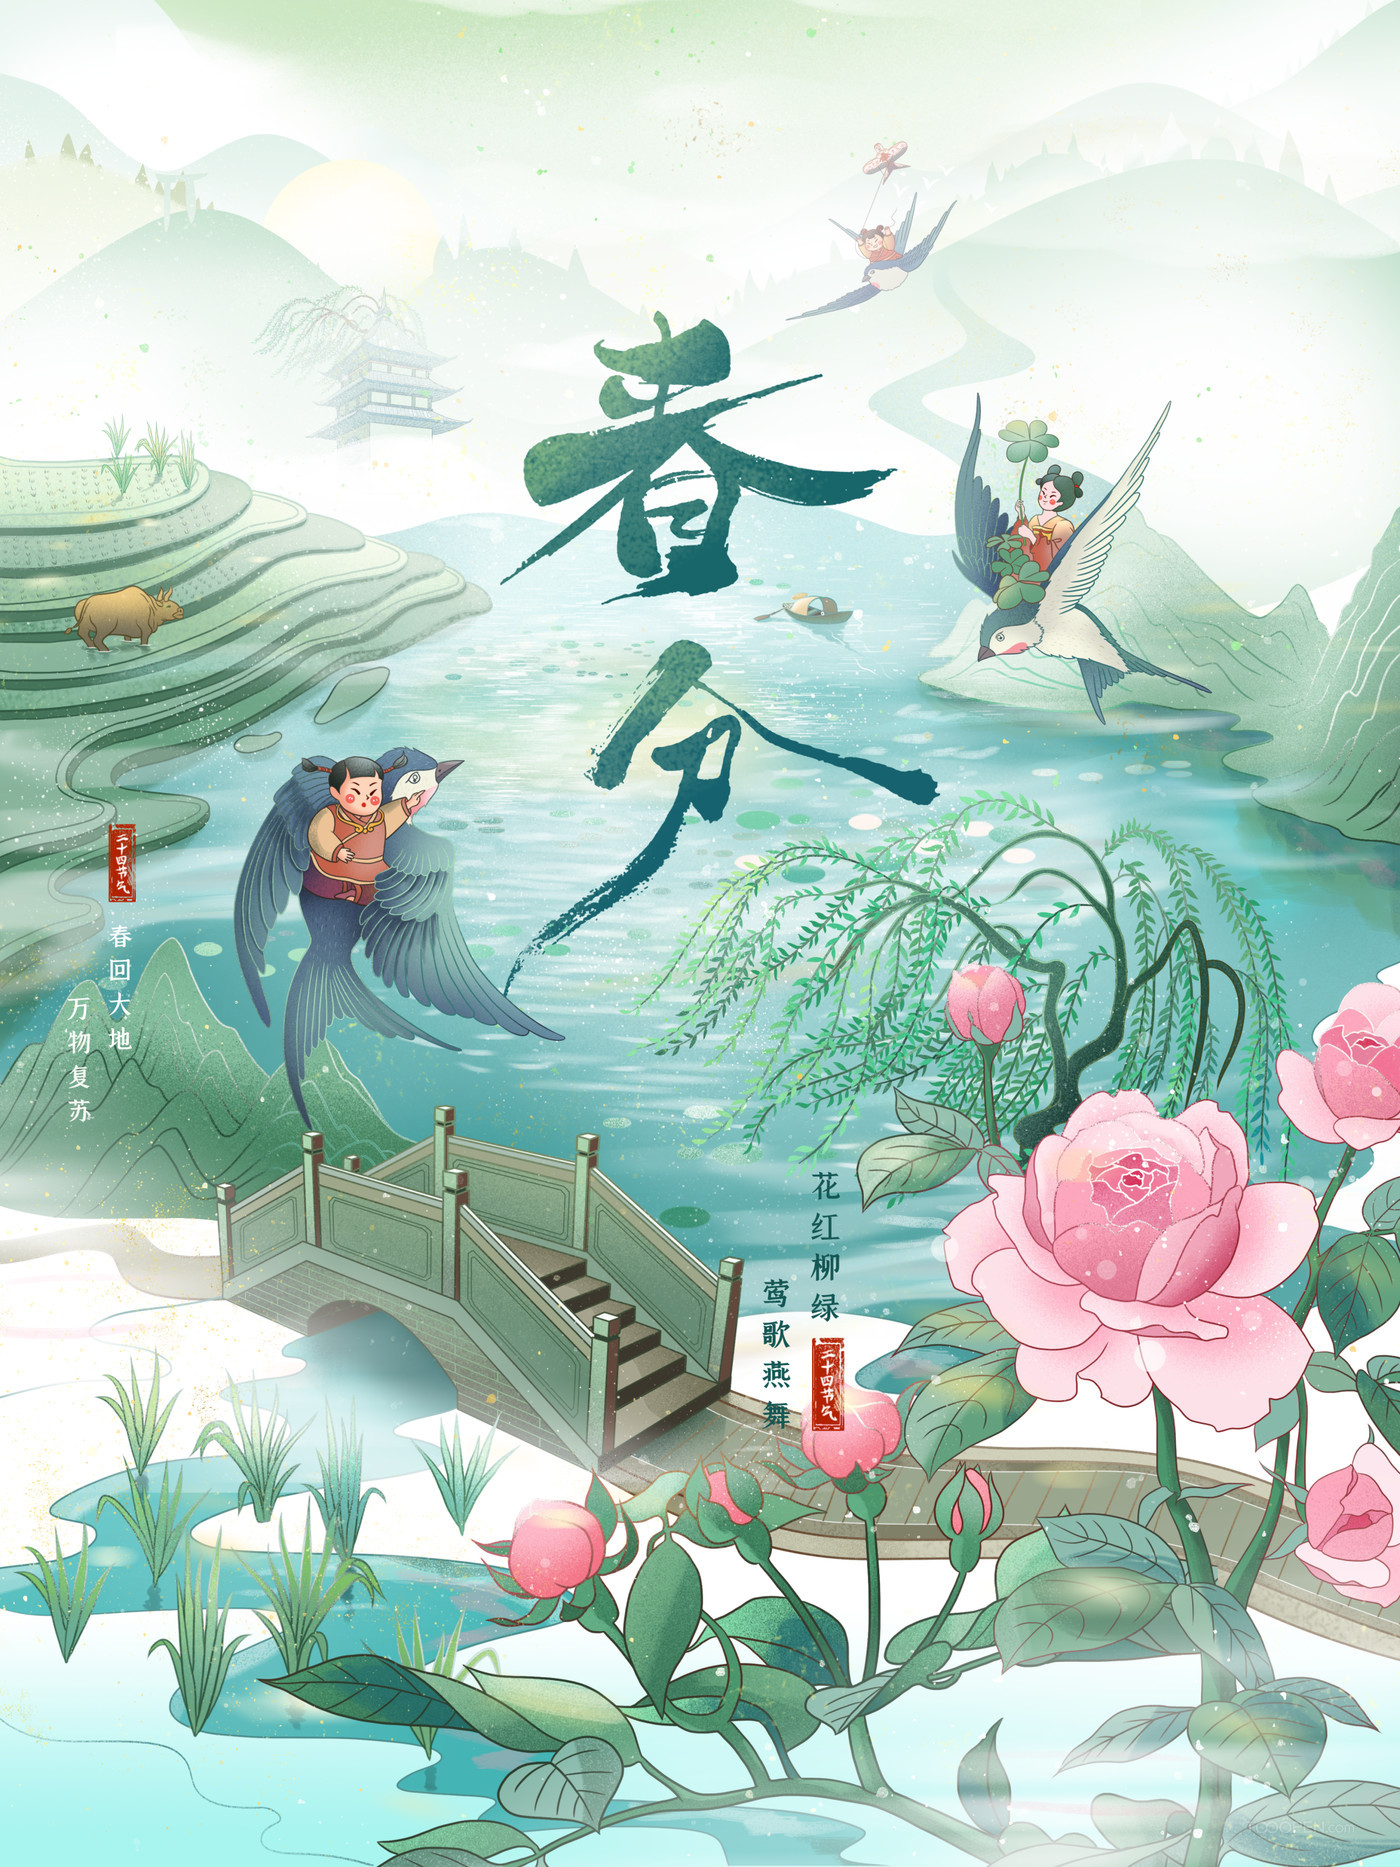 中国传统二十四节气春分节日海报插画素材10款-02